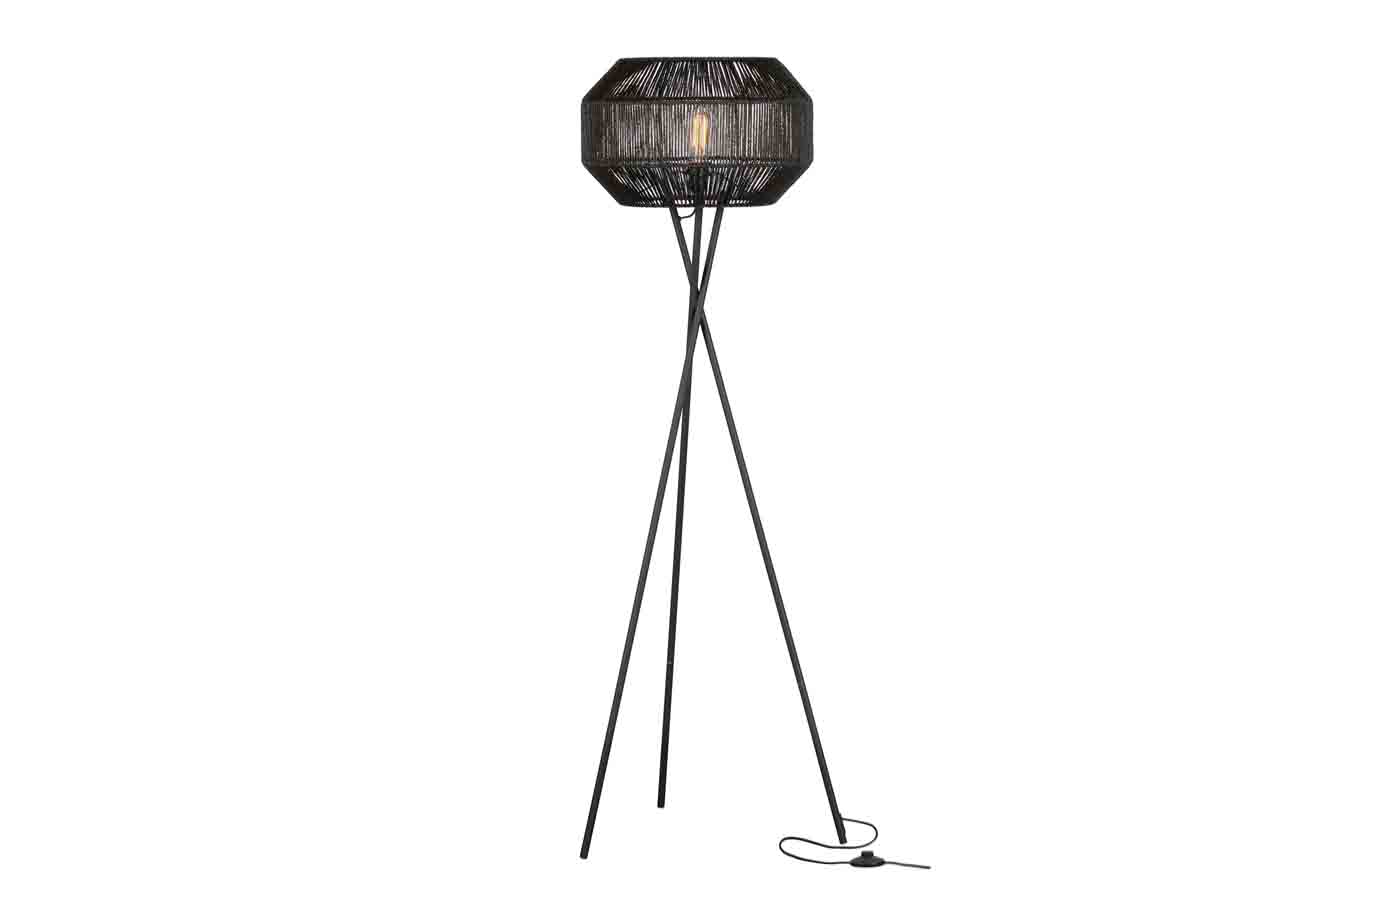 Traumhafte Stehleuchte mit einem filigranen Dreifuß aus Metall, der Leuchtschirm aus natürlicher Jute in Schwarz gefärbt unterstreicht das zeitlose Design